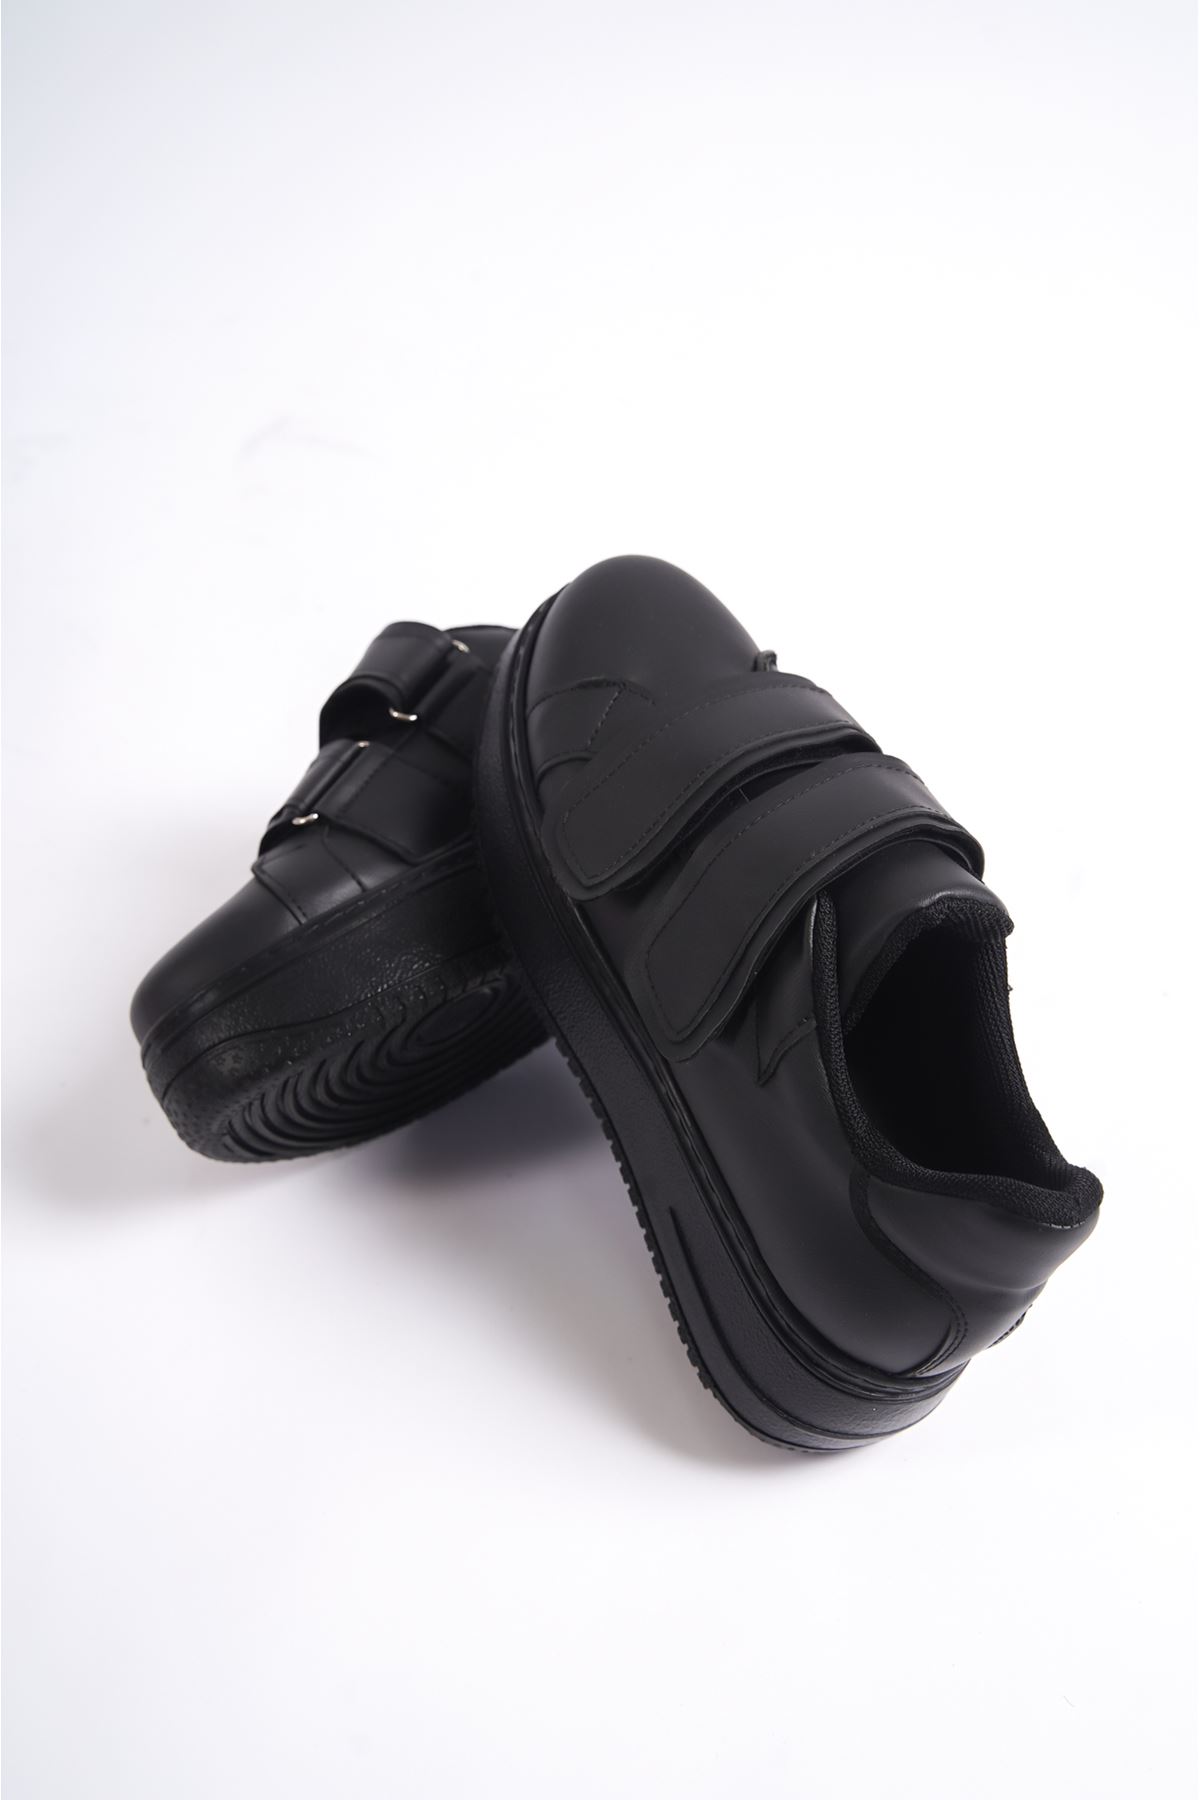 Bellamy Siyah Mat Deri Cırtlı Kadın Spor Ayakkabı